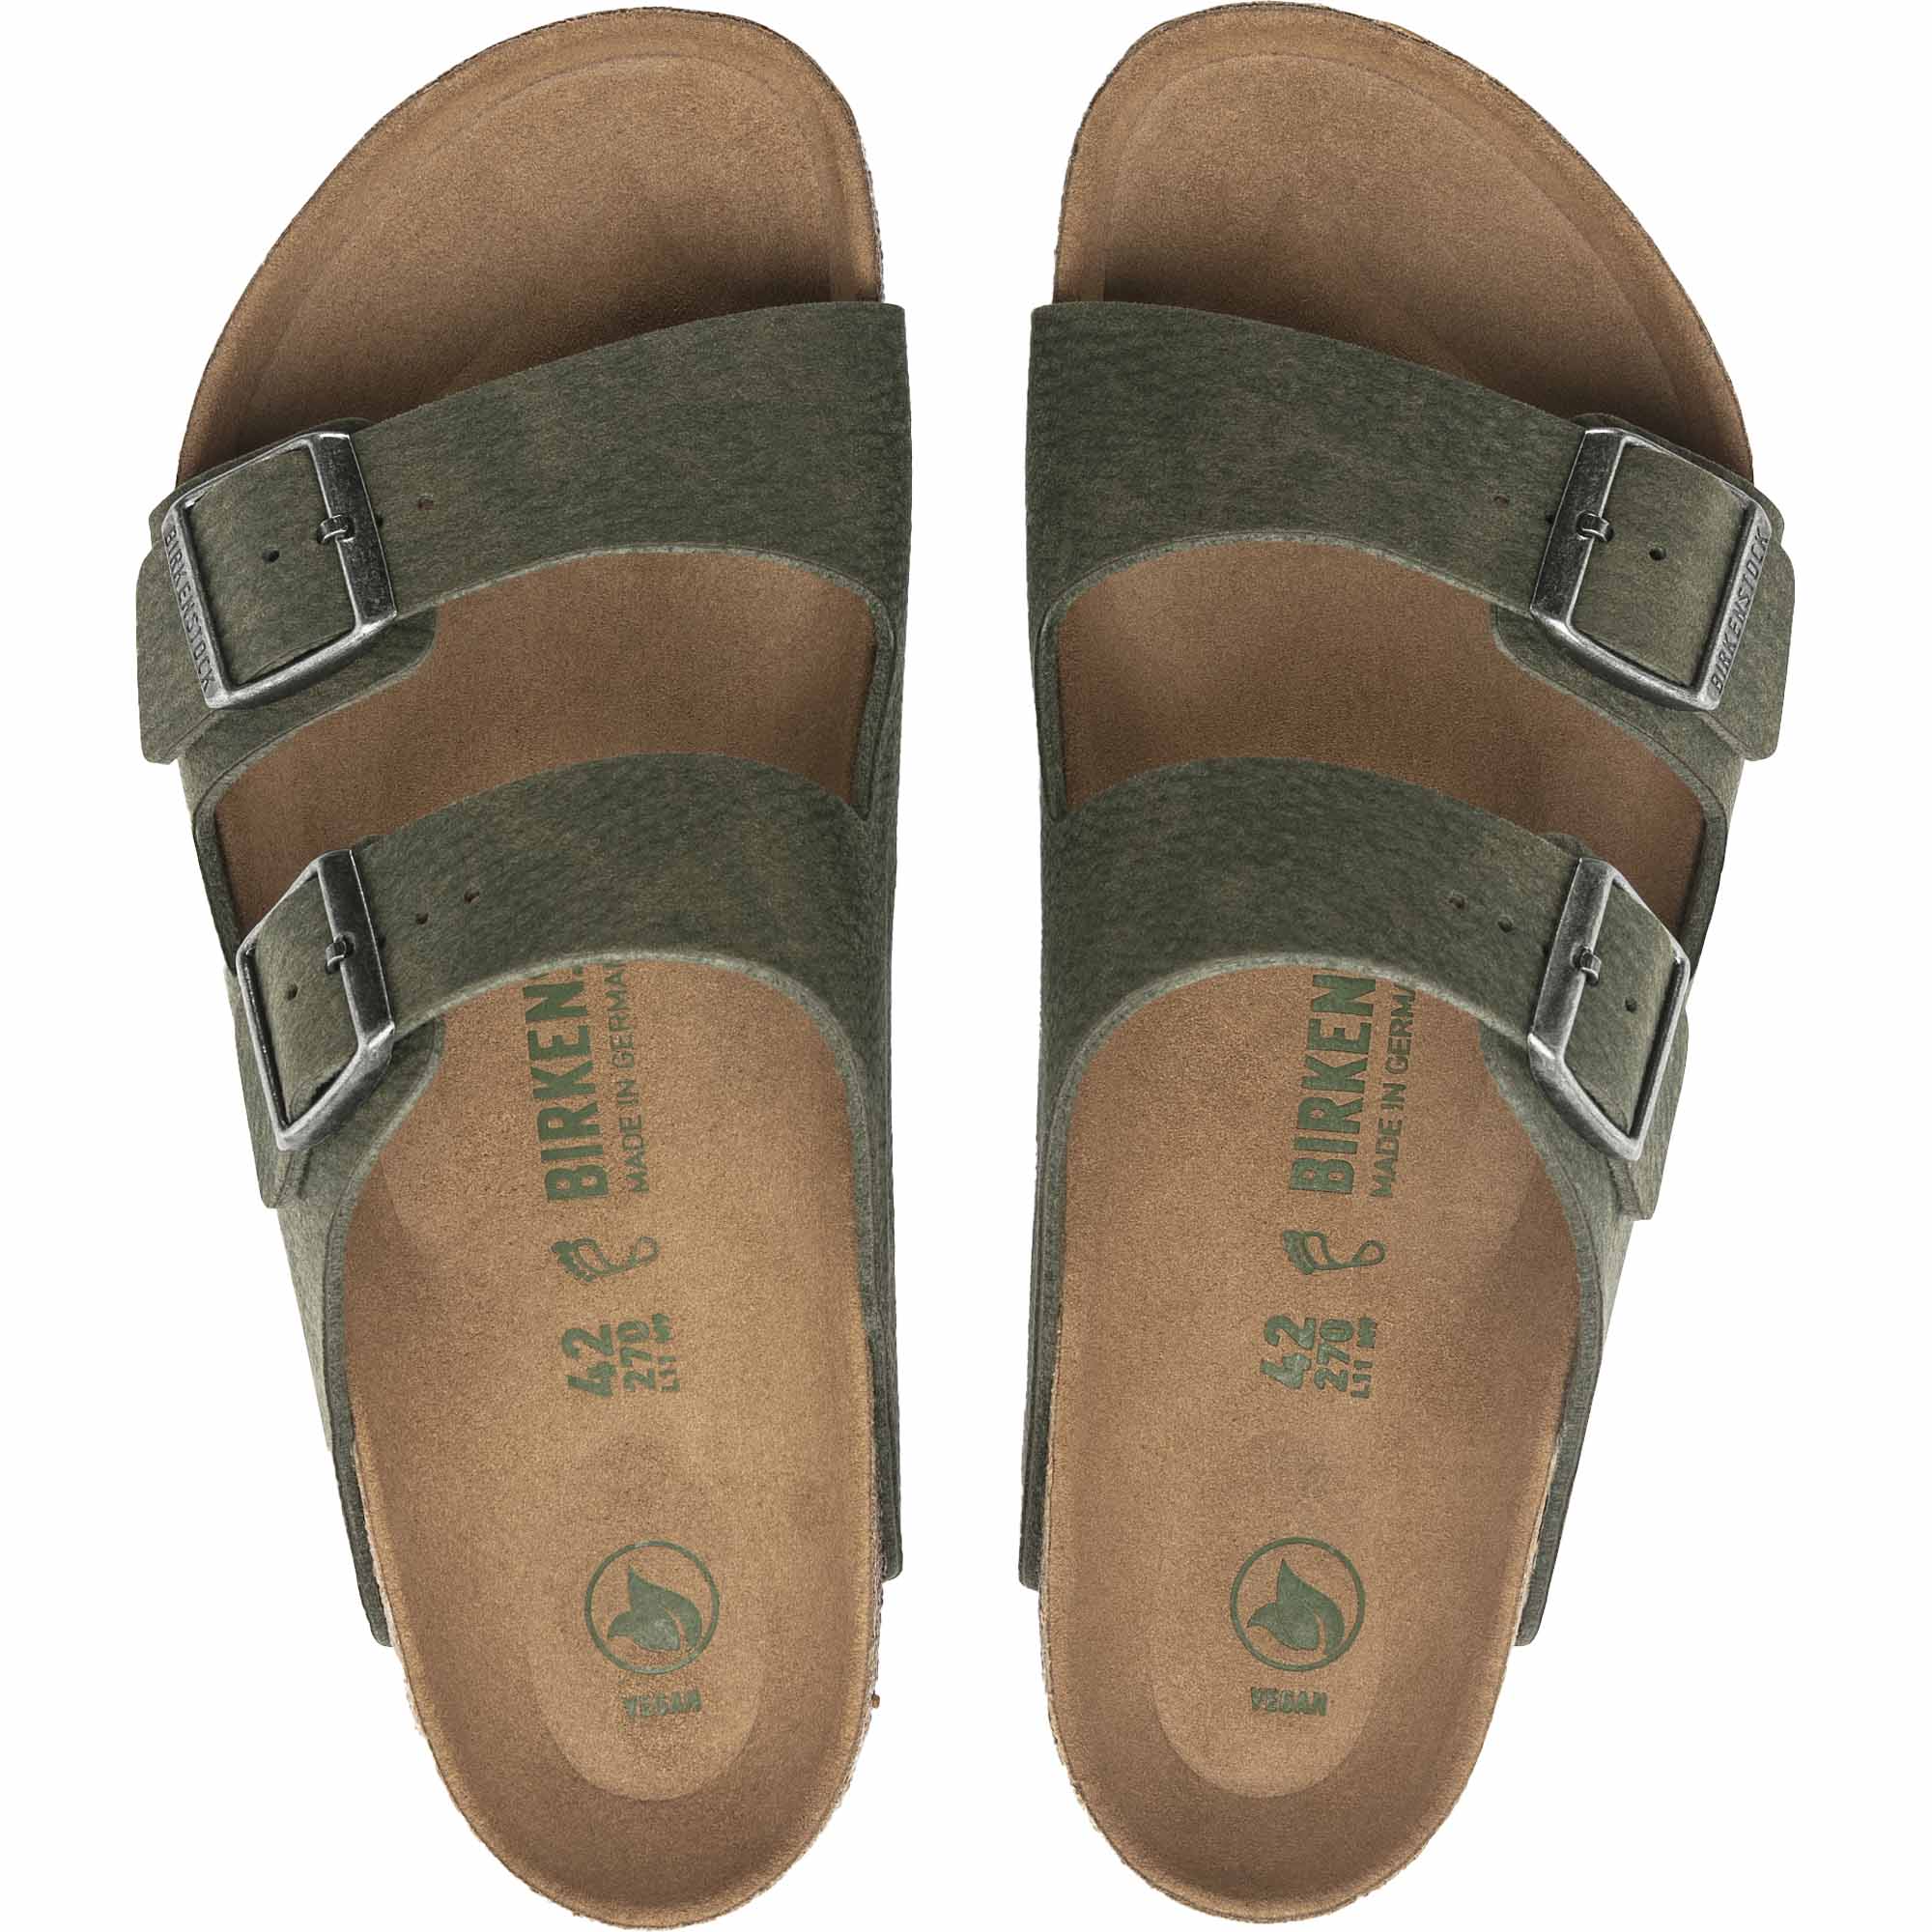 Birkenstock Arizona Microfibre Vegan Men's Sandals